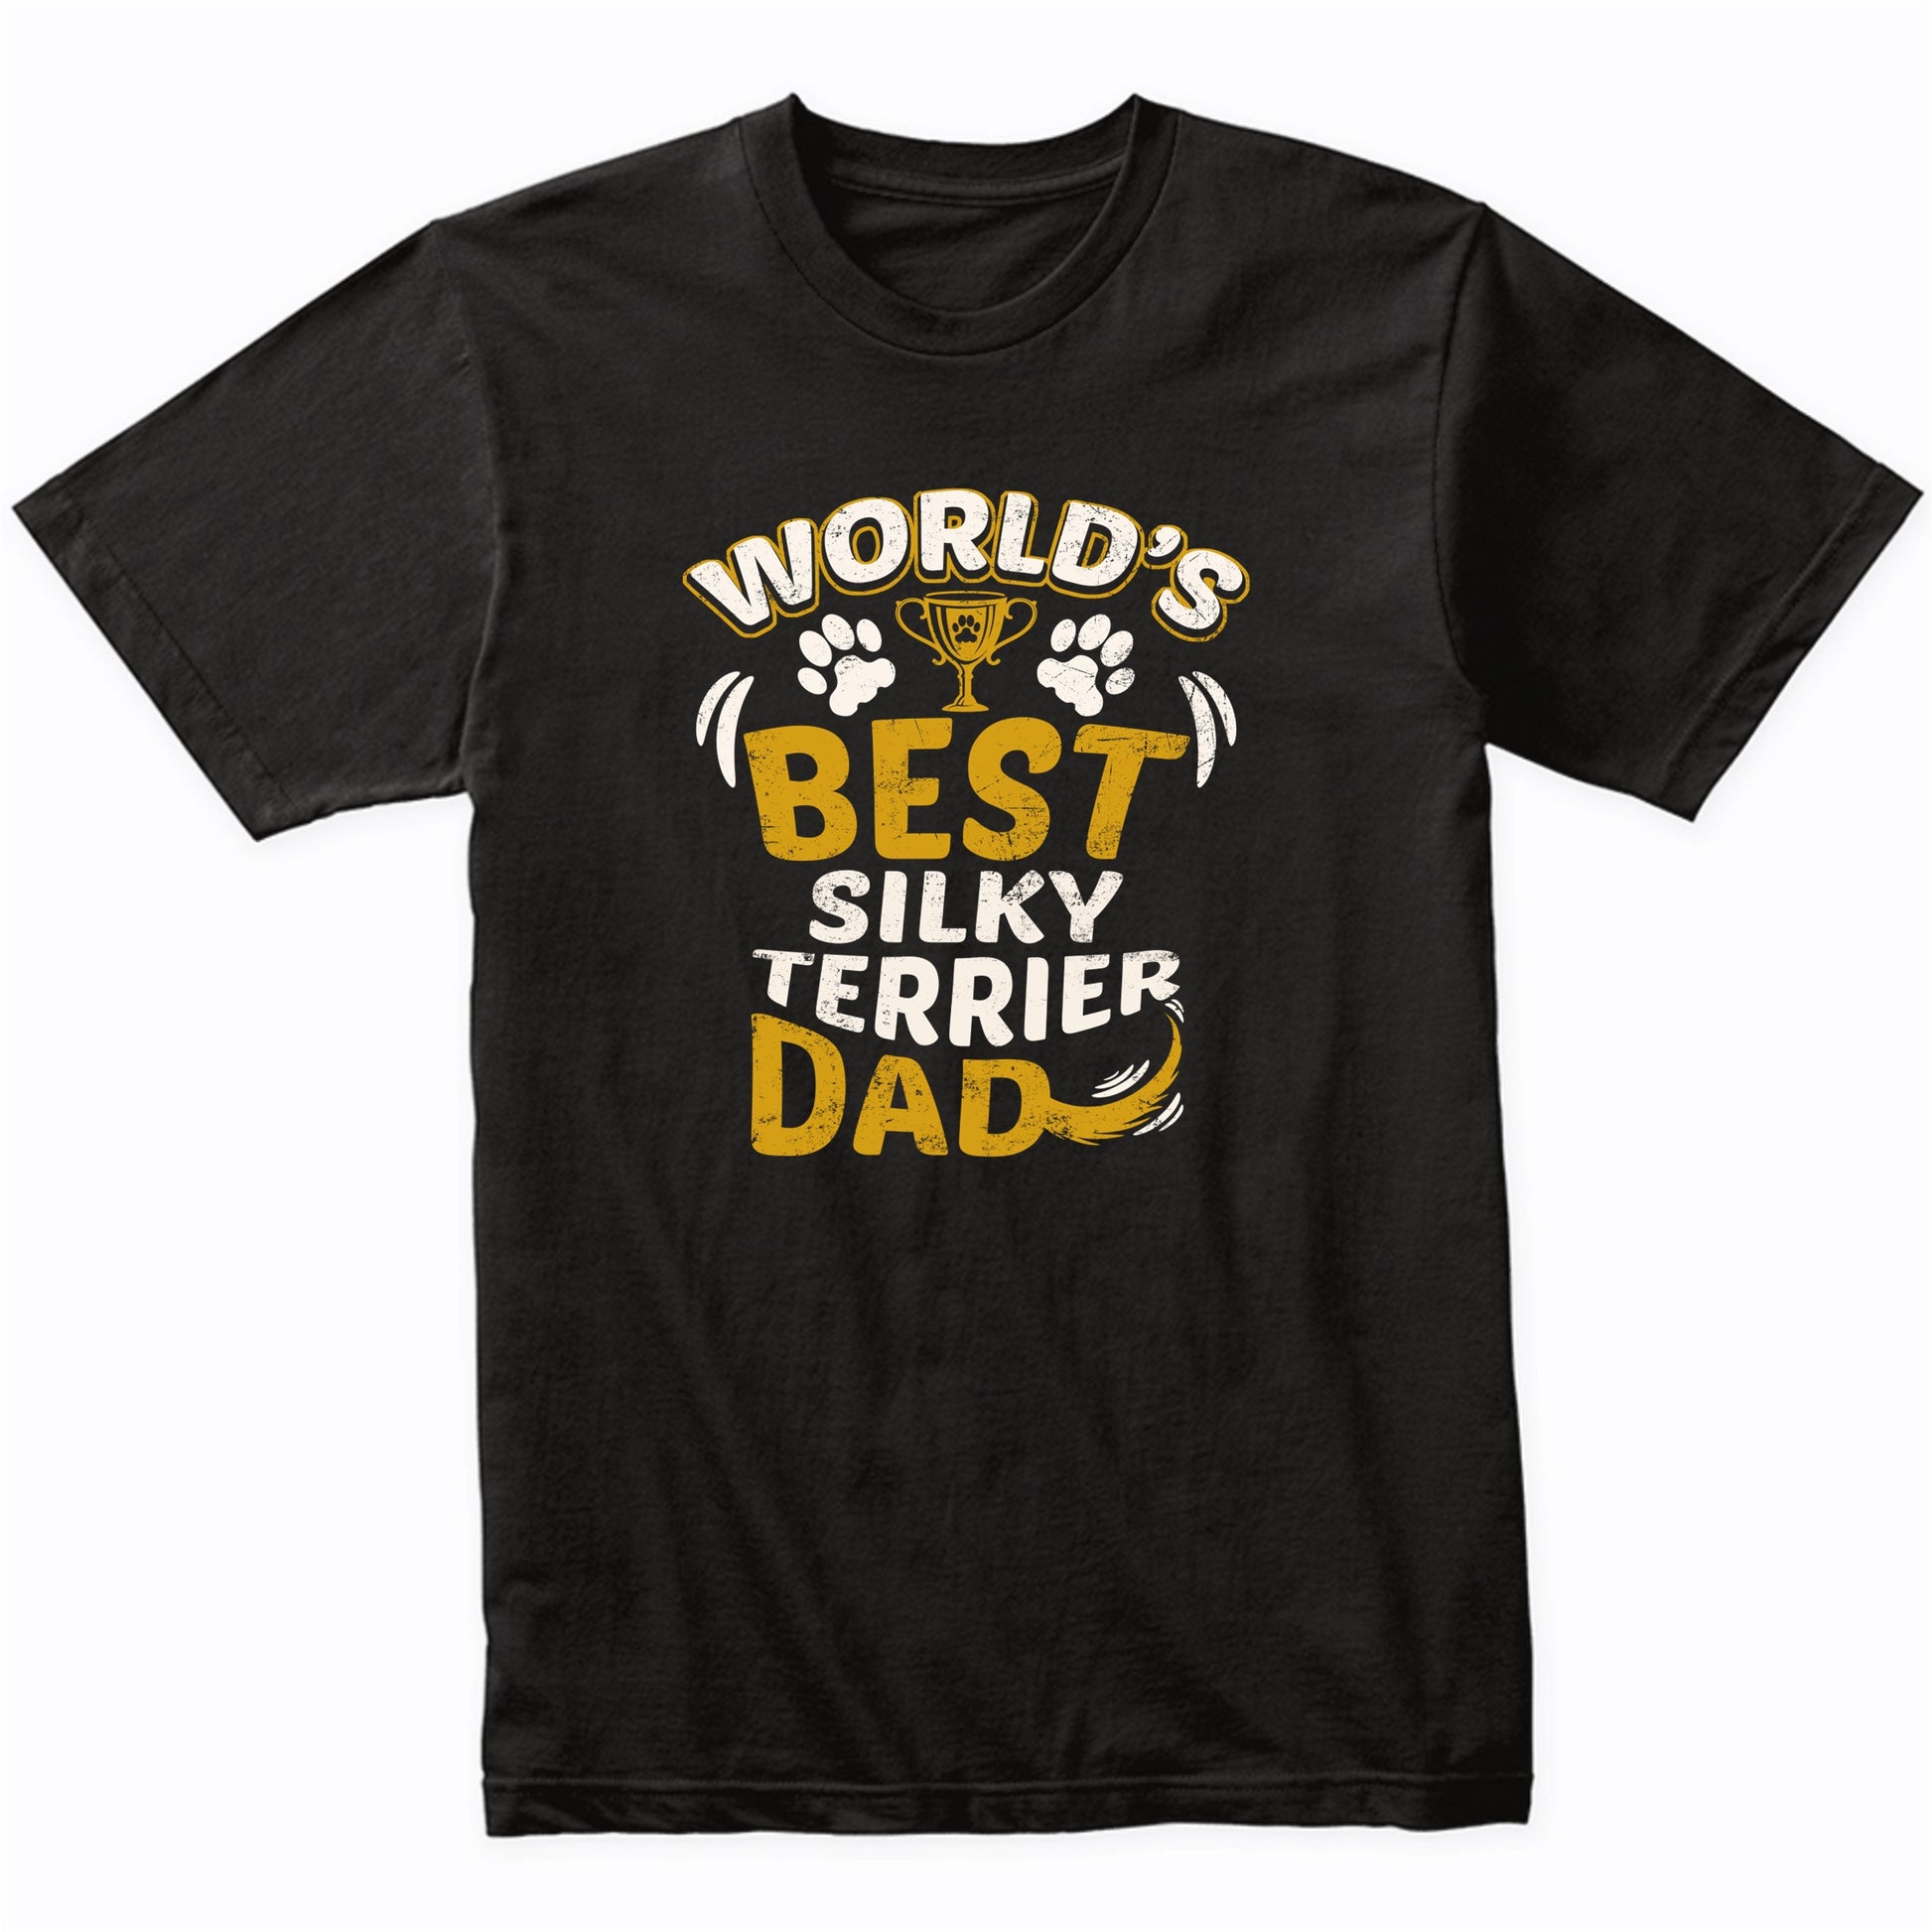 World's Best Silky Terrier Dad Graphic T-Shirt